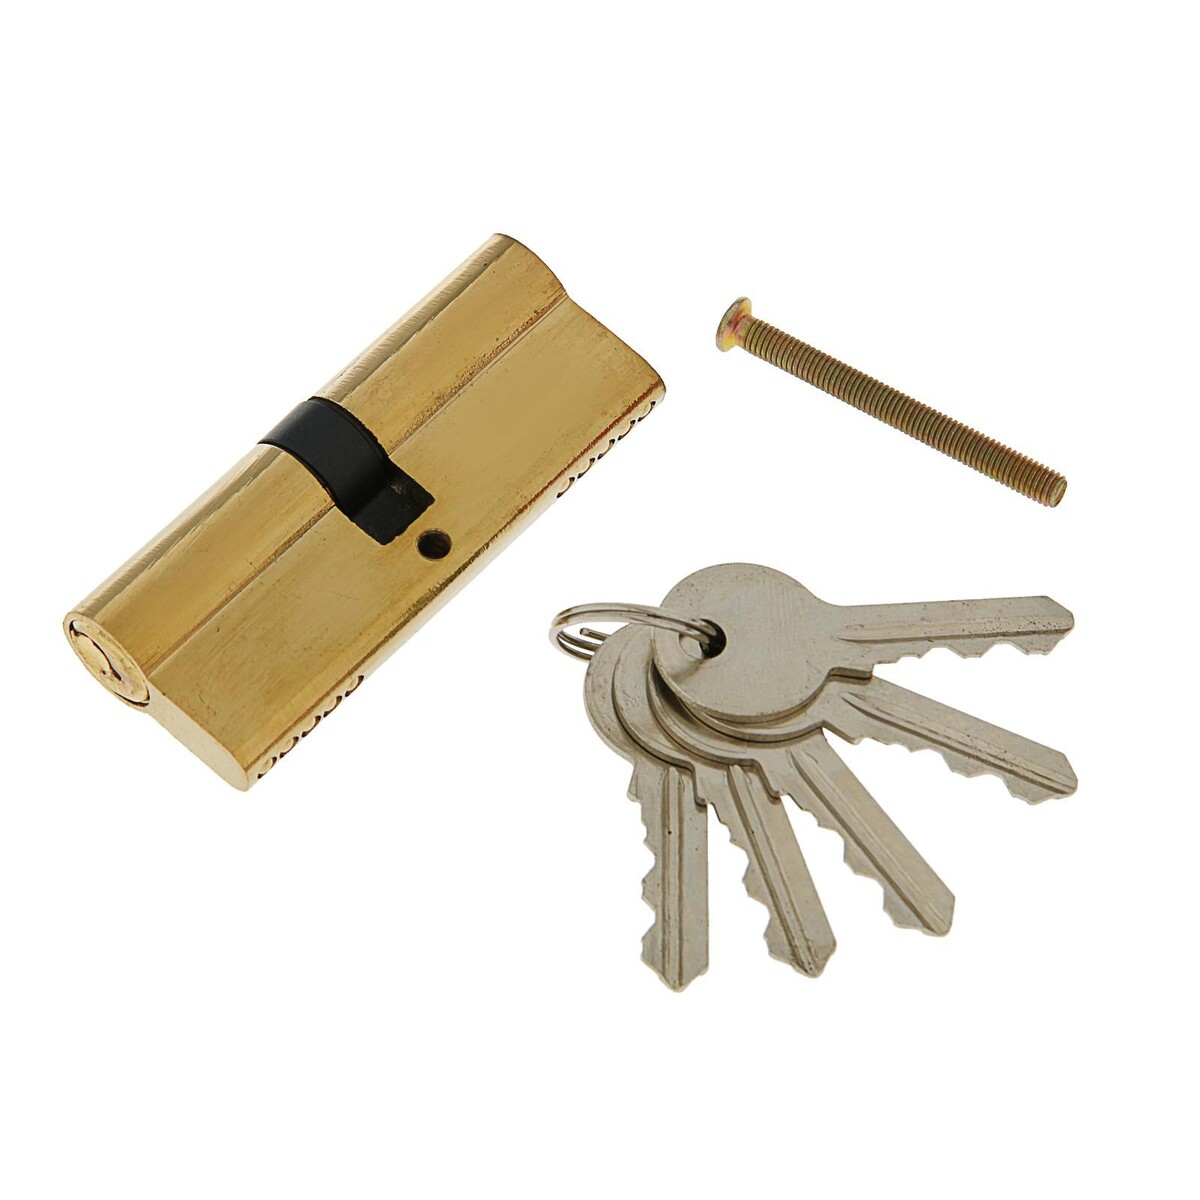 Цилиндровый механизм, 80 мм, английский ключ, 5 ключей, цвет золото замок навесной аллюр вс1ч 375п 6776 блистер цилиндровый влагонепроницаемый 6 ключей